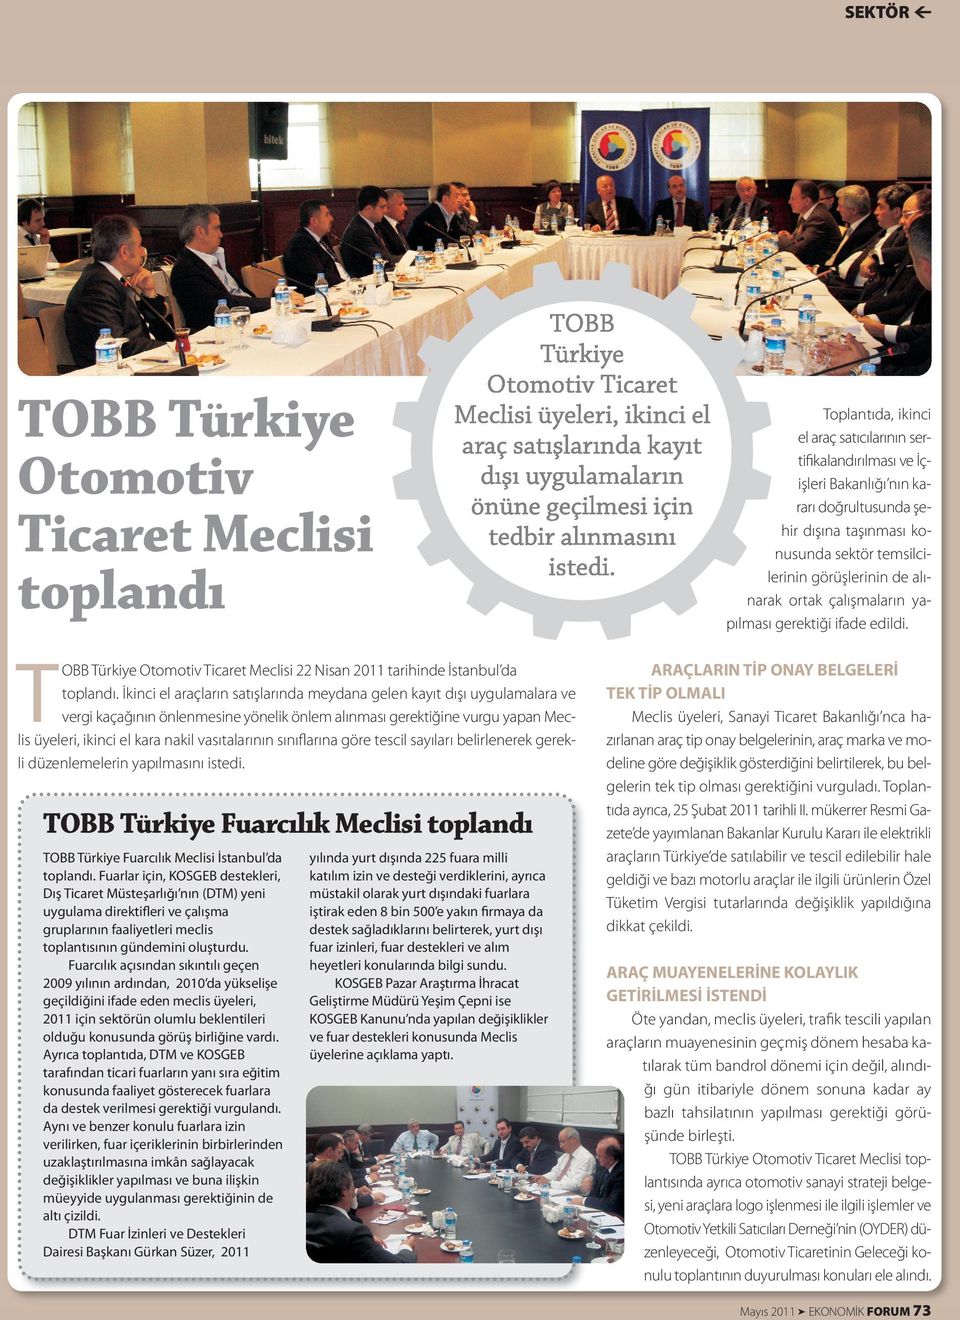 sınıﬂarına göre tescil sayıları belirlenerek gerekli düzenlemelerin yapılmasını istedi. TOBB Türkiye Fuarcılık Meclisi toplandı TOBB Türkiye Fuarcılık Meclisi İstanbul da toplandı.